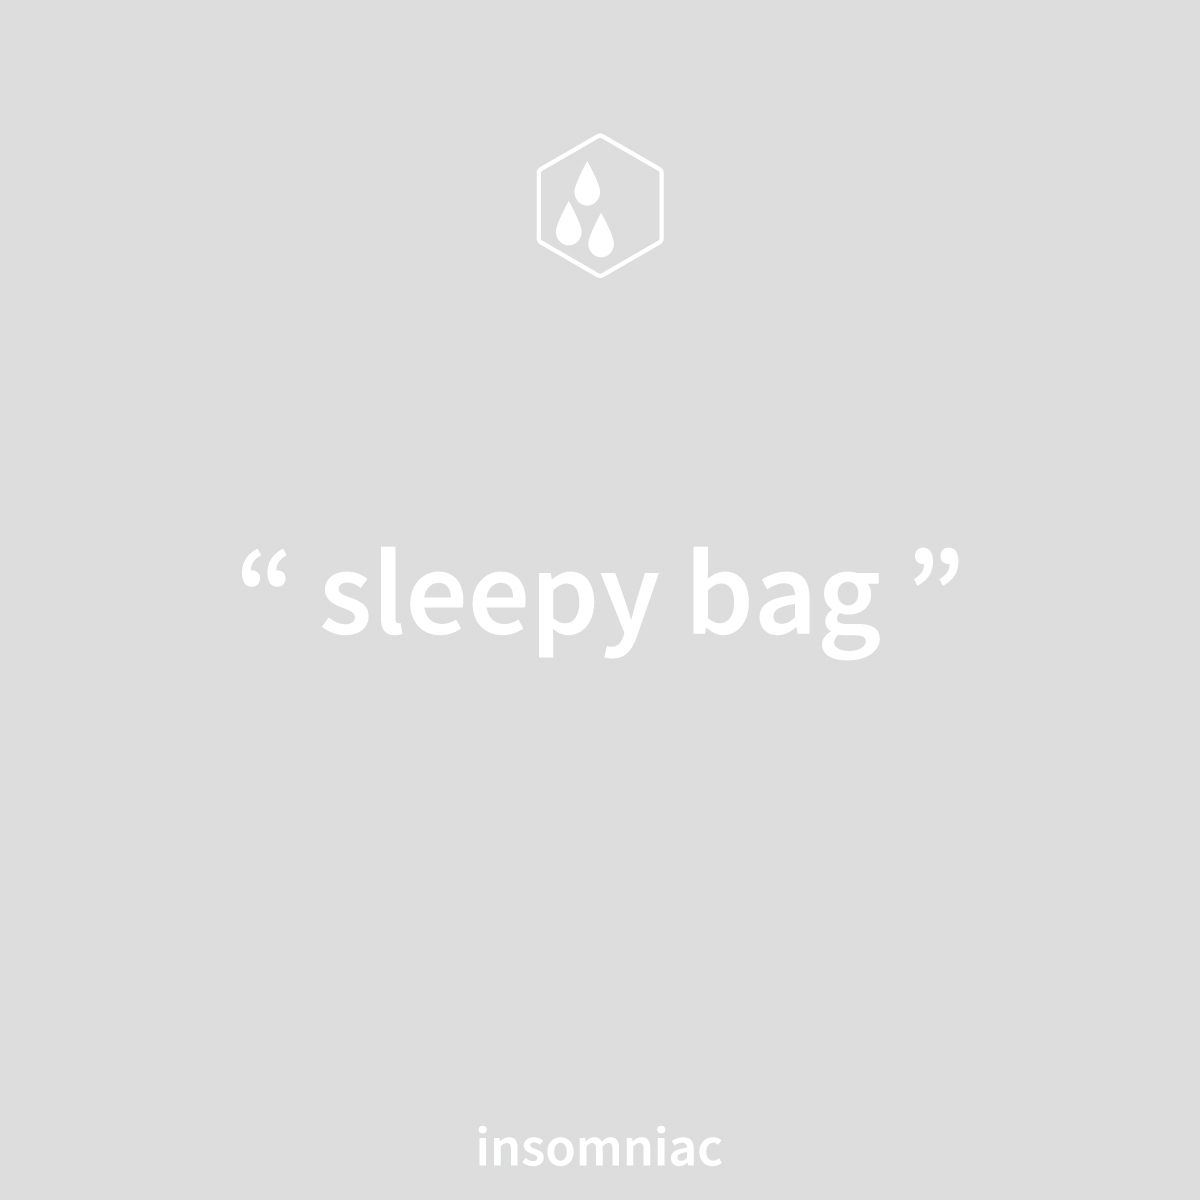 " sleepy bag "